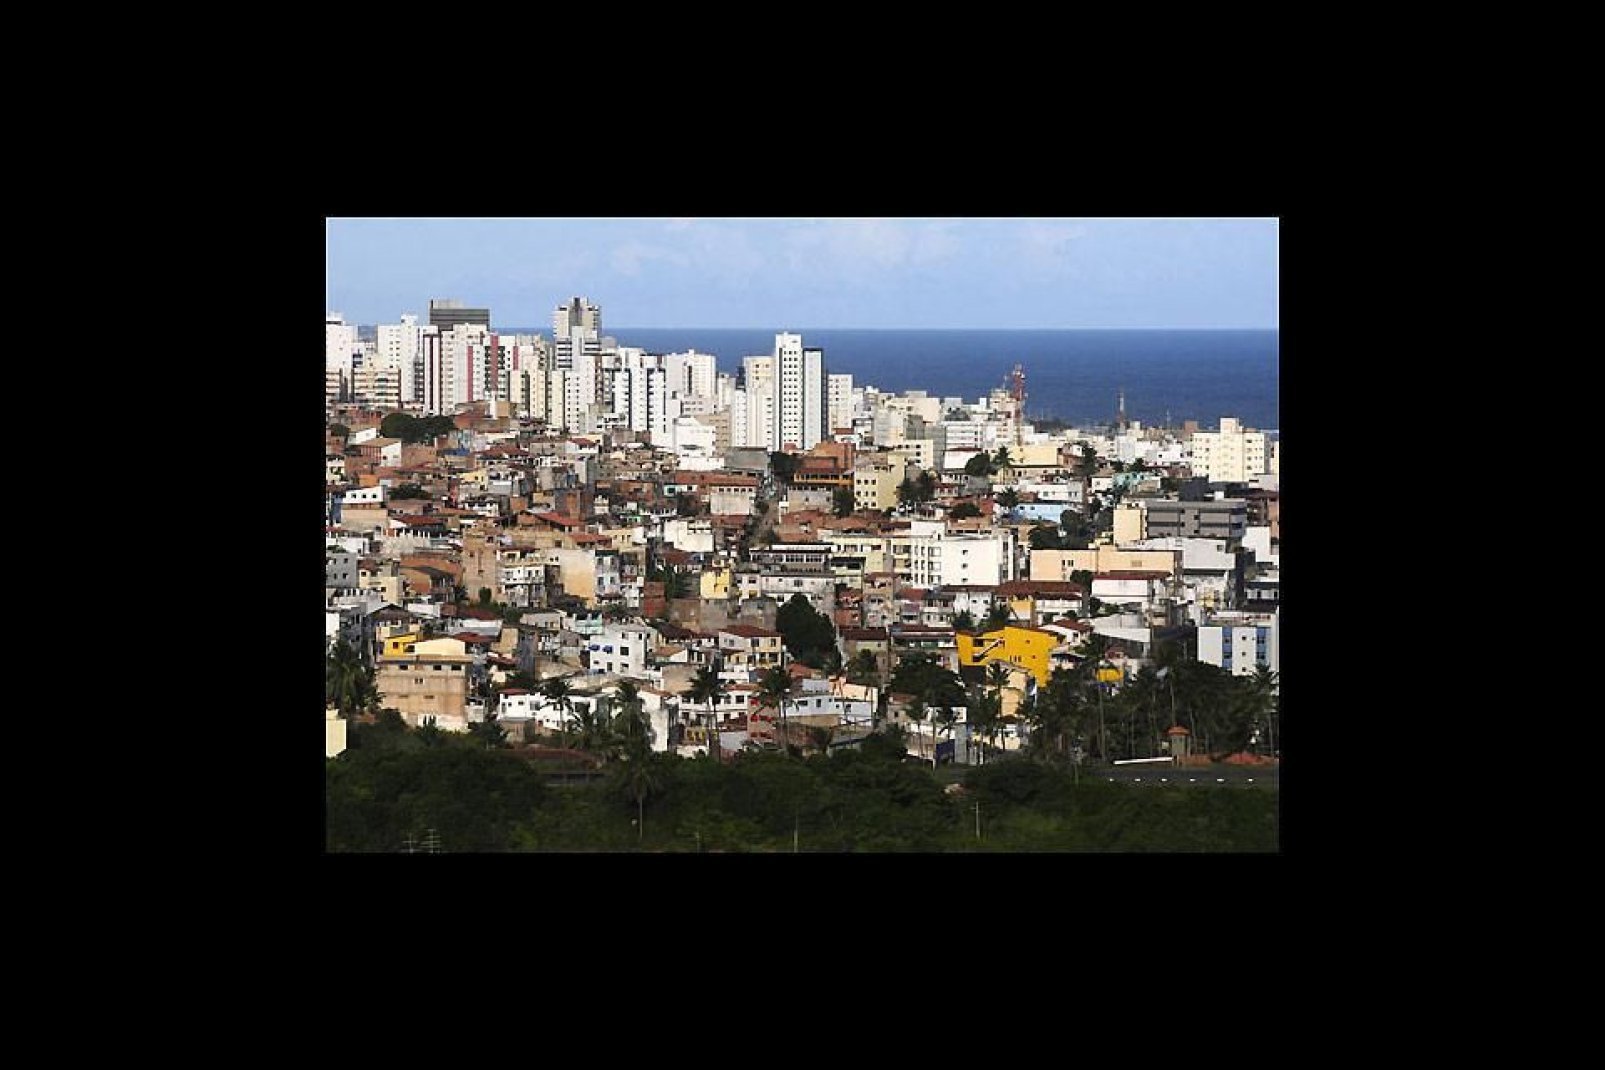 Une ville de contrastes entre favelas et gratte-ciel modernes.